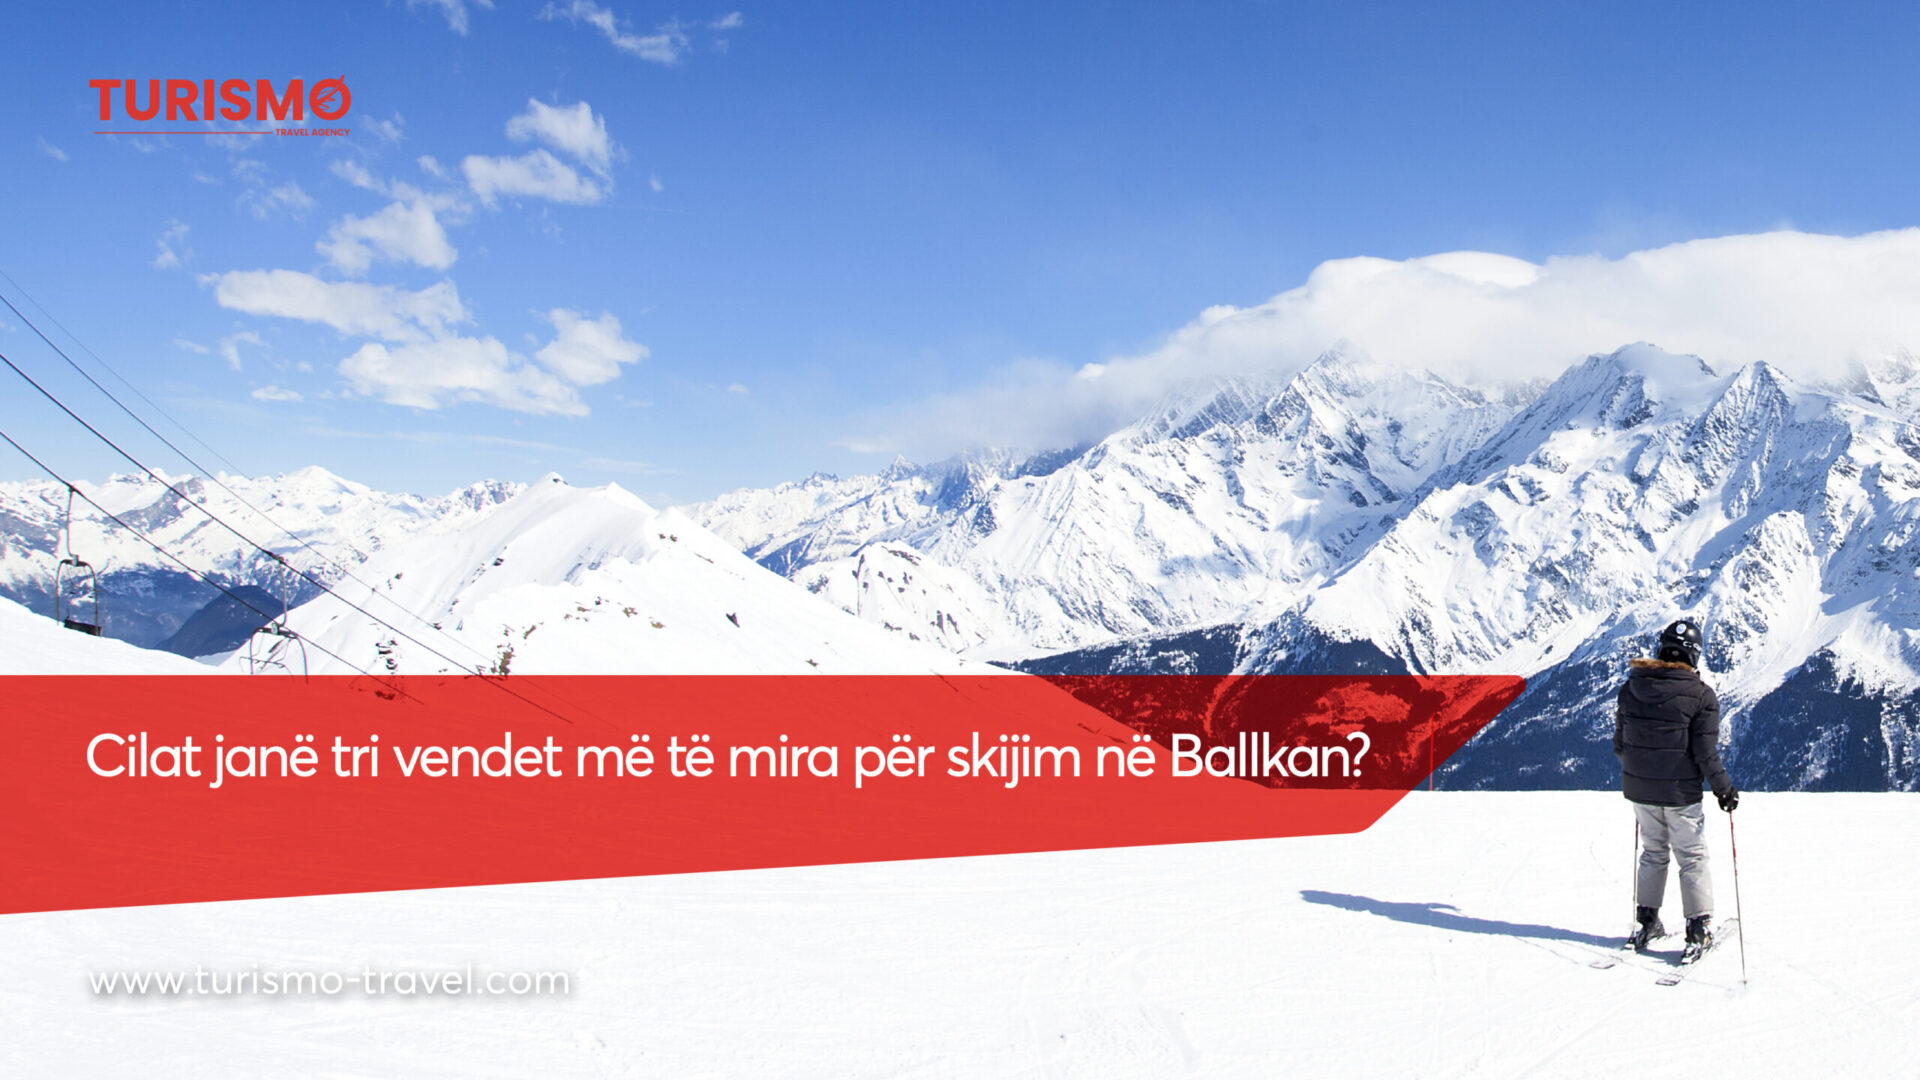 Cilat janë 3 vendet më të mira për skijim në Ballkan?